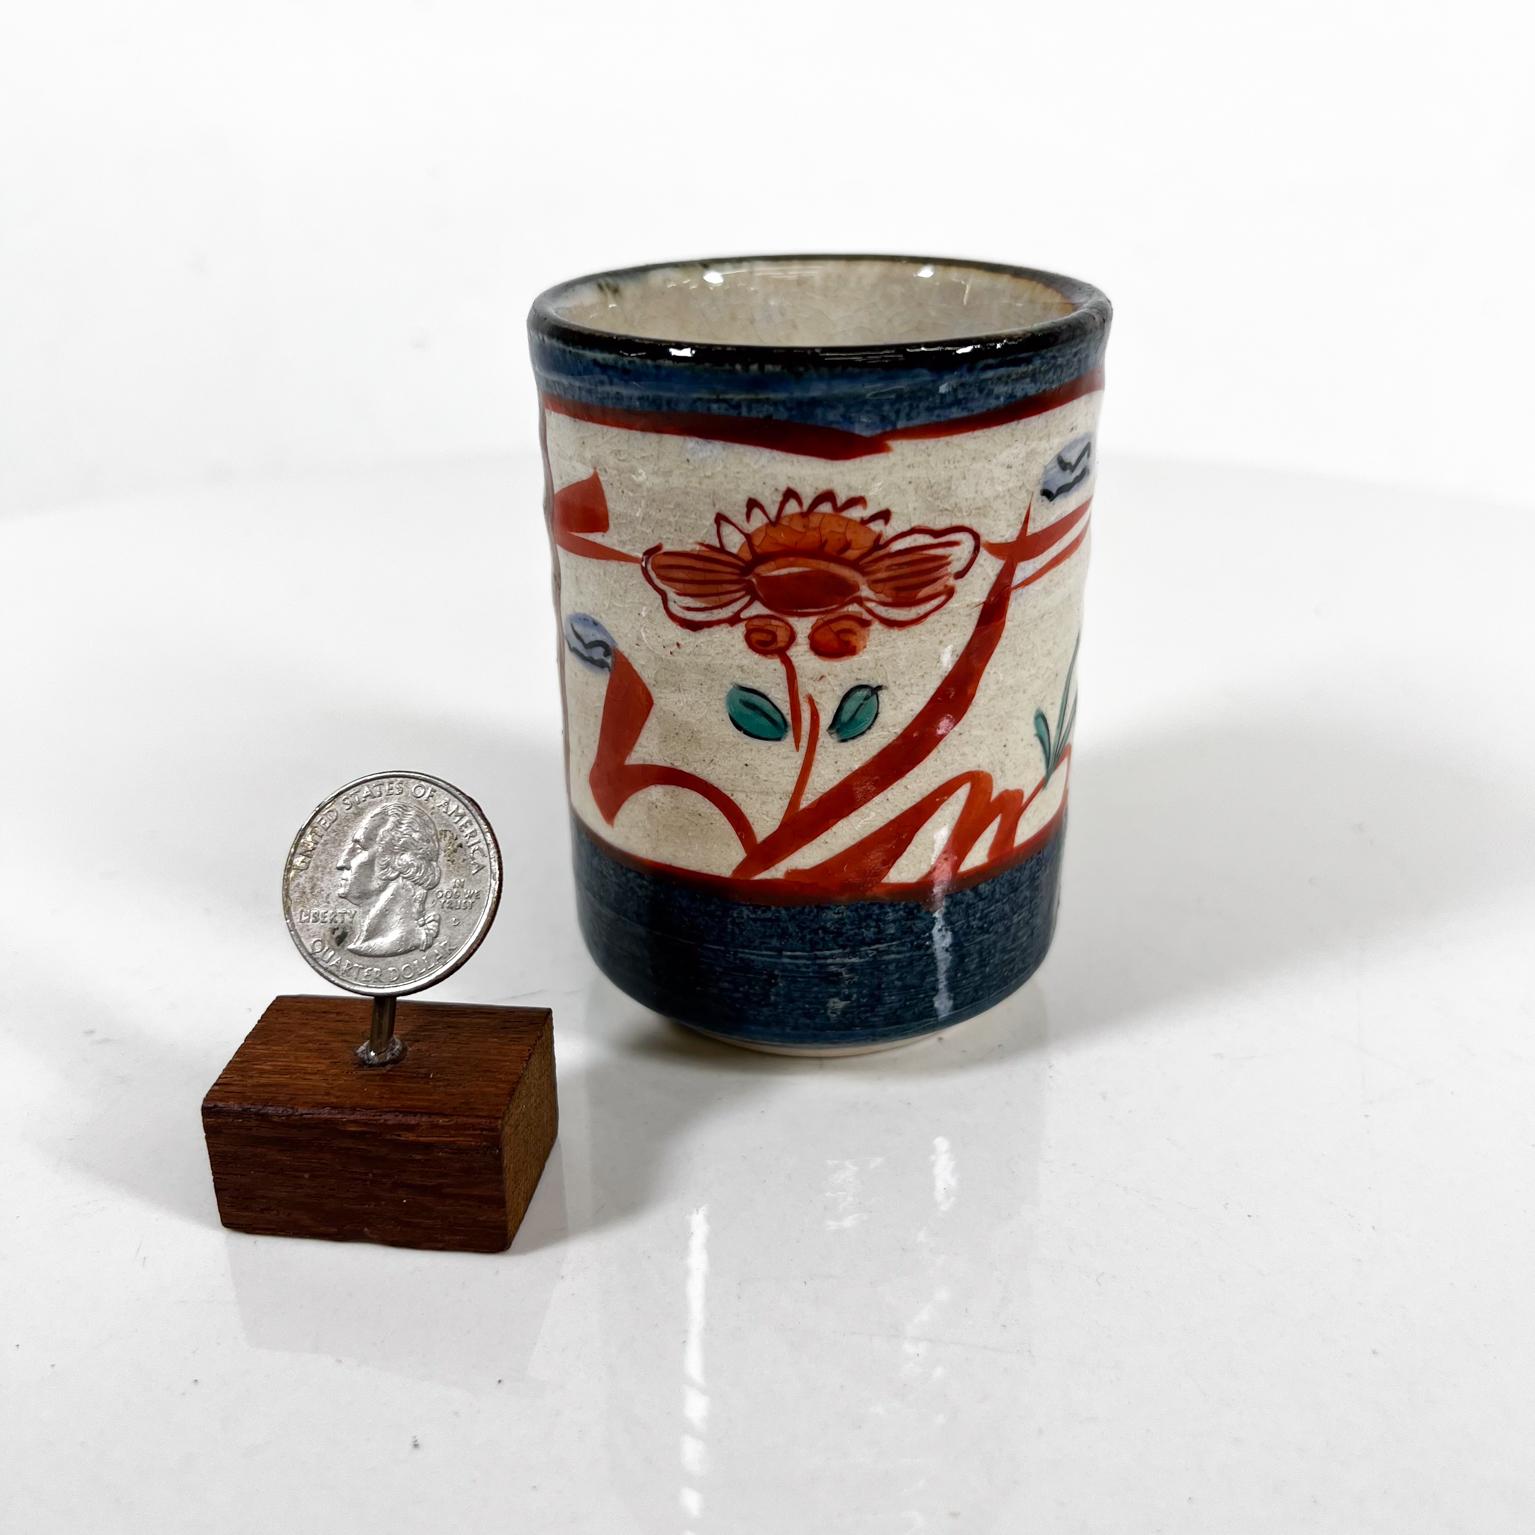 1960s Mid-Century Modern Oriental Flower Art Pottery Cup
Signé avec des symboles de caractères asiatiques
3,5 de haut. 2,63 de diamètre
Etat d'origine vintage et d'occasion
Veuillez vous référer aux images.